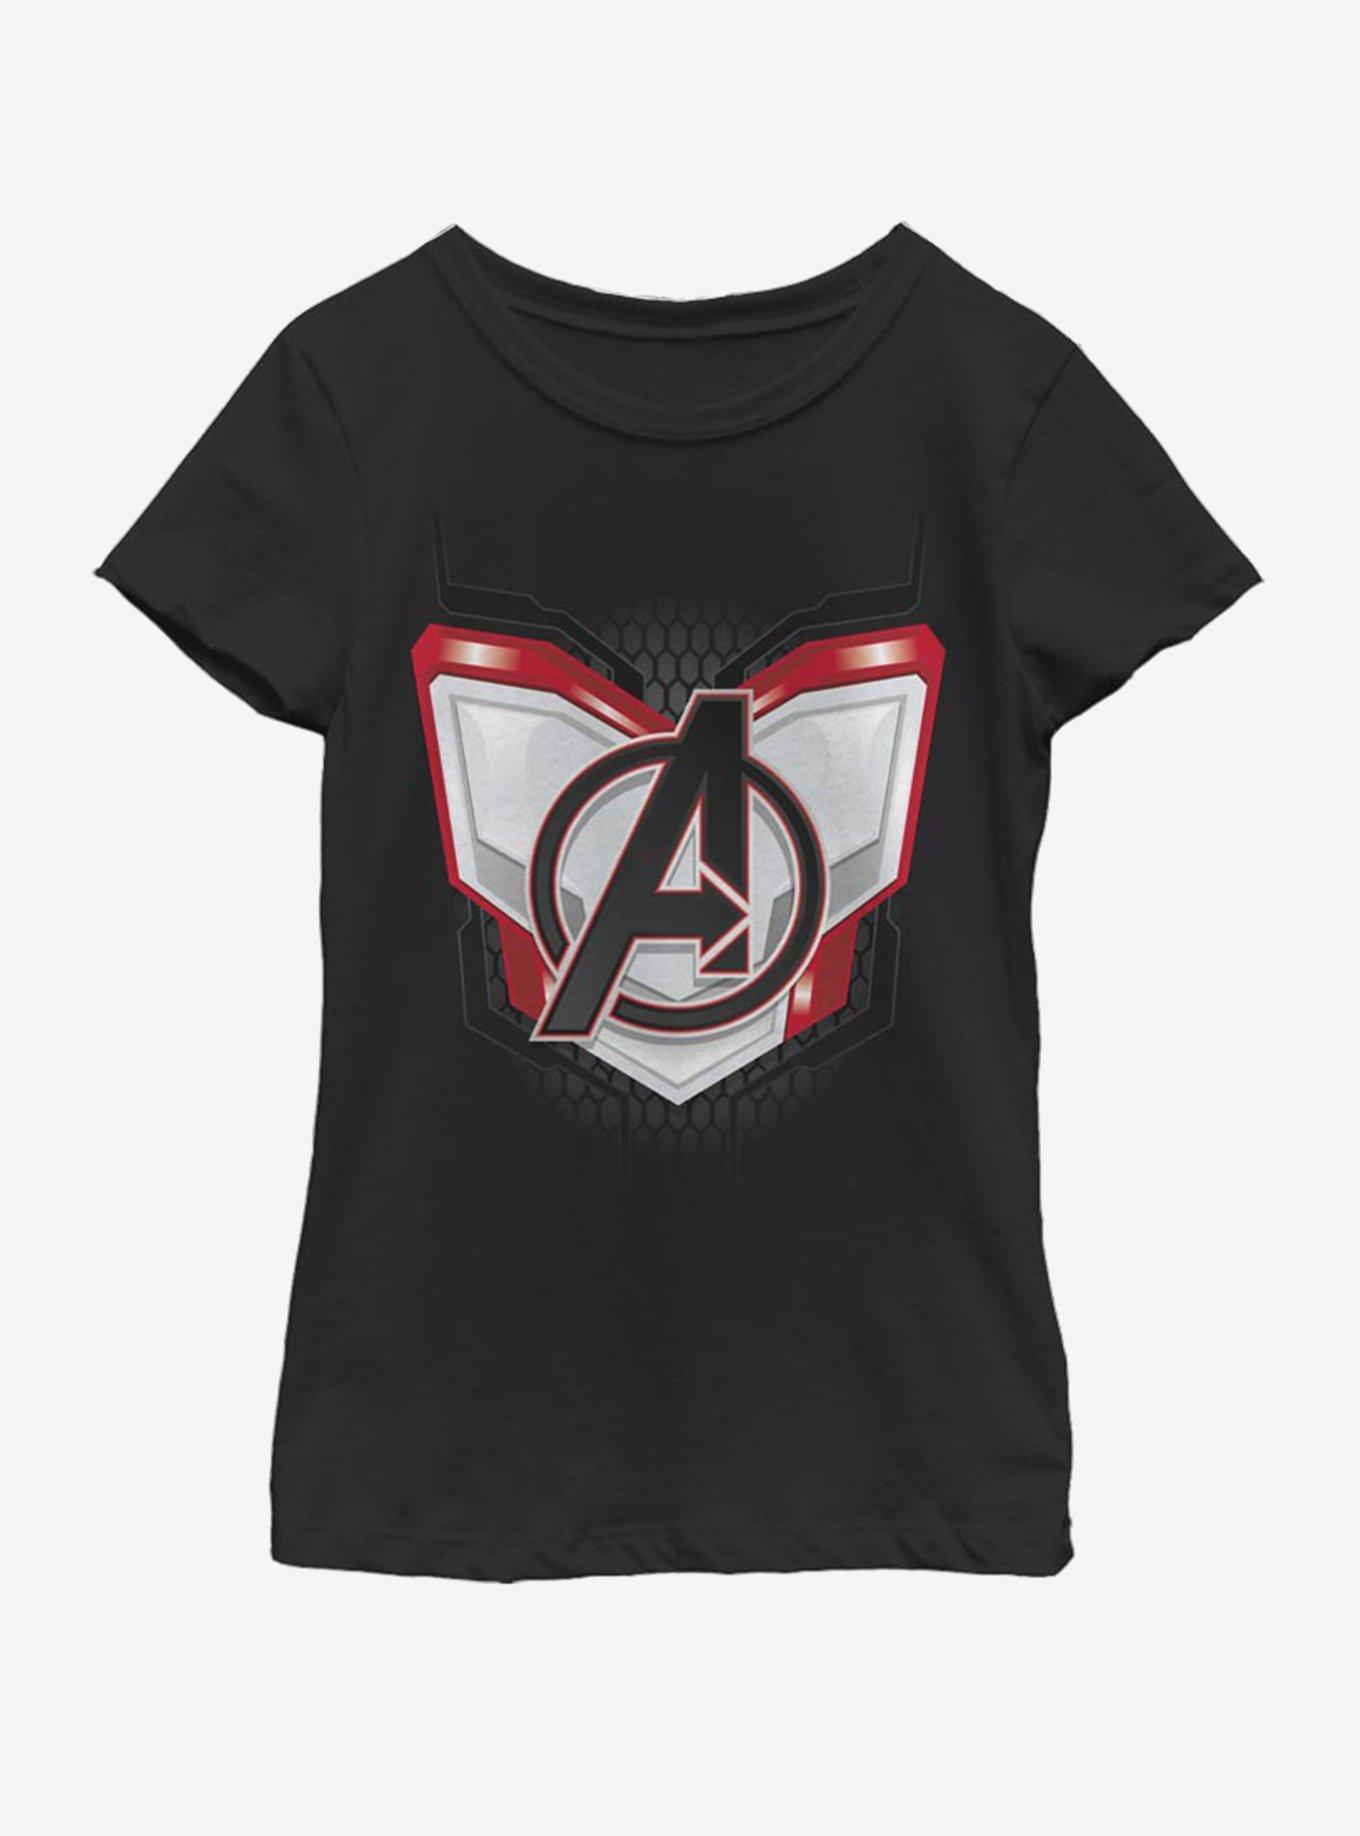 Marvel Avengers: Endgame Endgame Logo Armor Youth Girls T-Shirt - BLACK ...